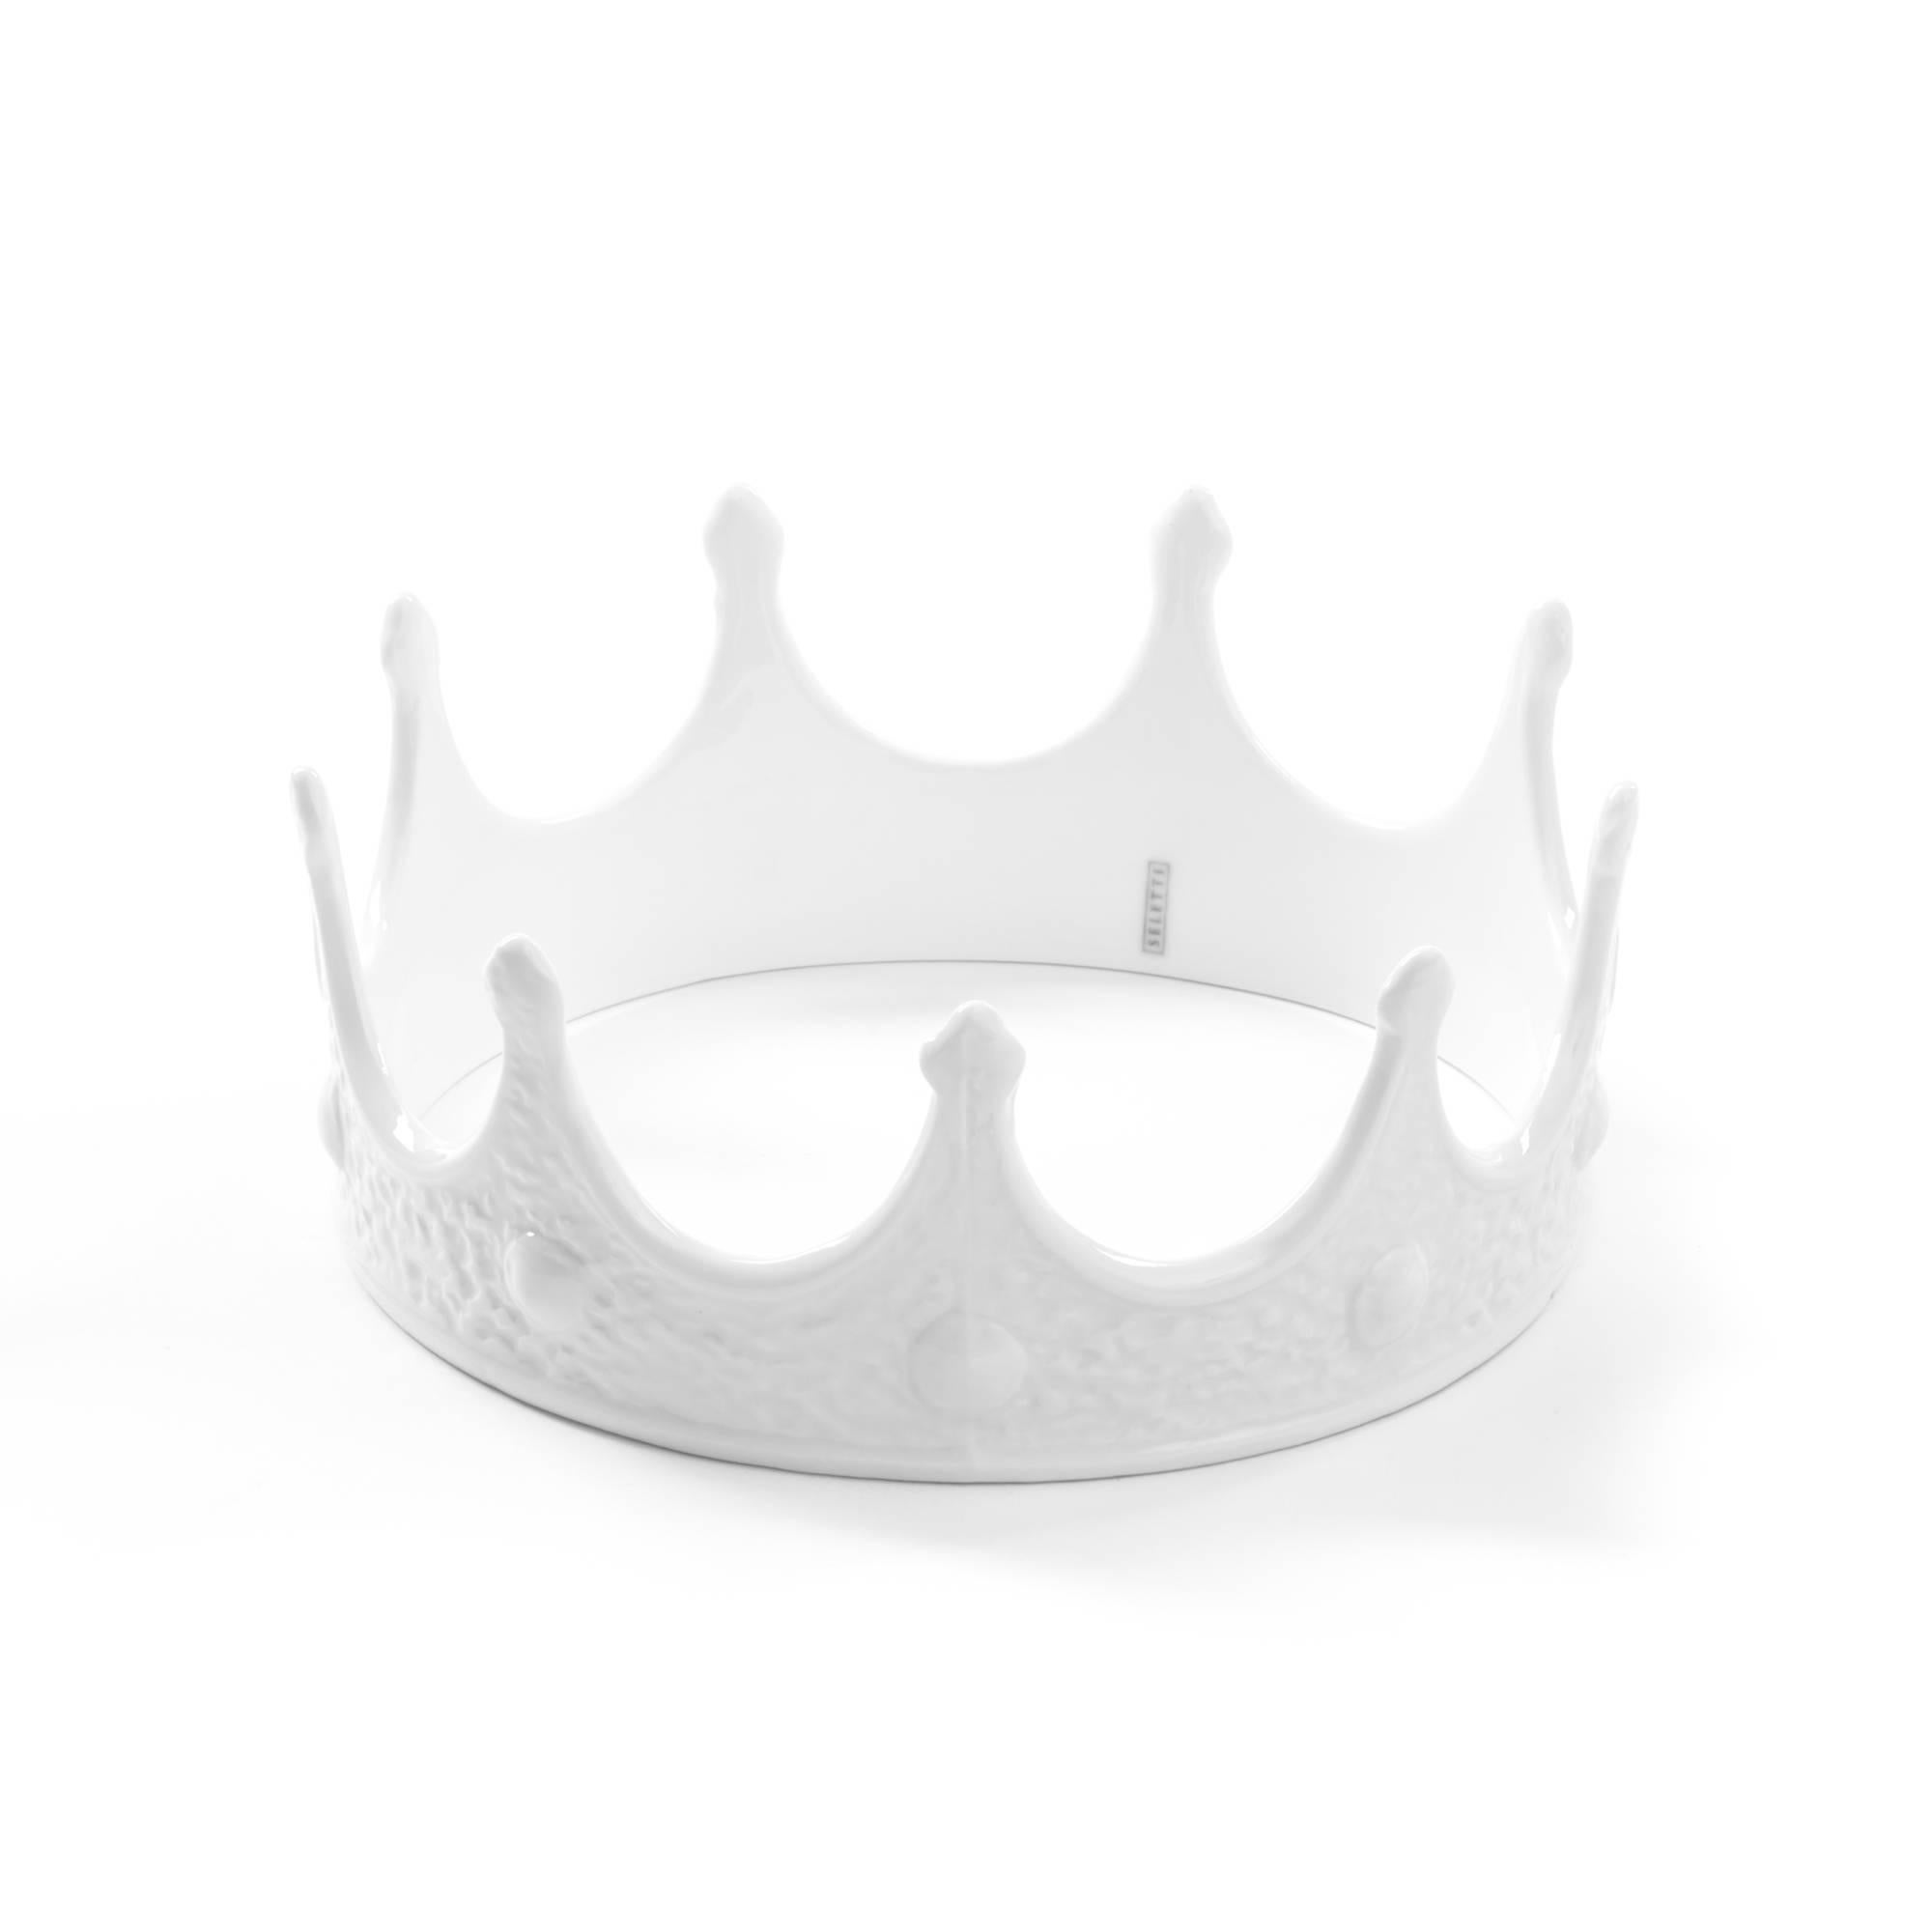 seletti crown